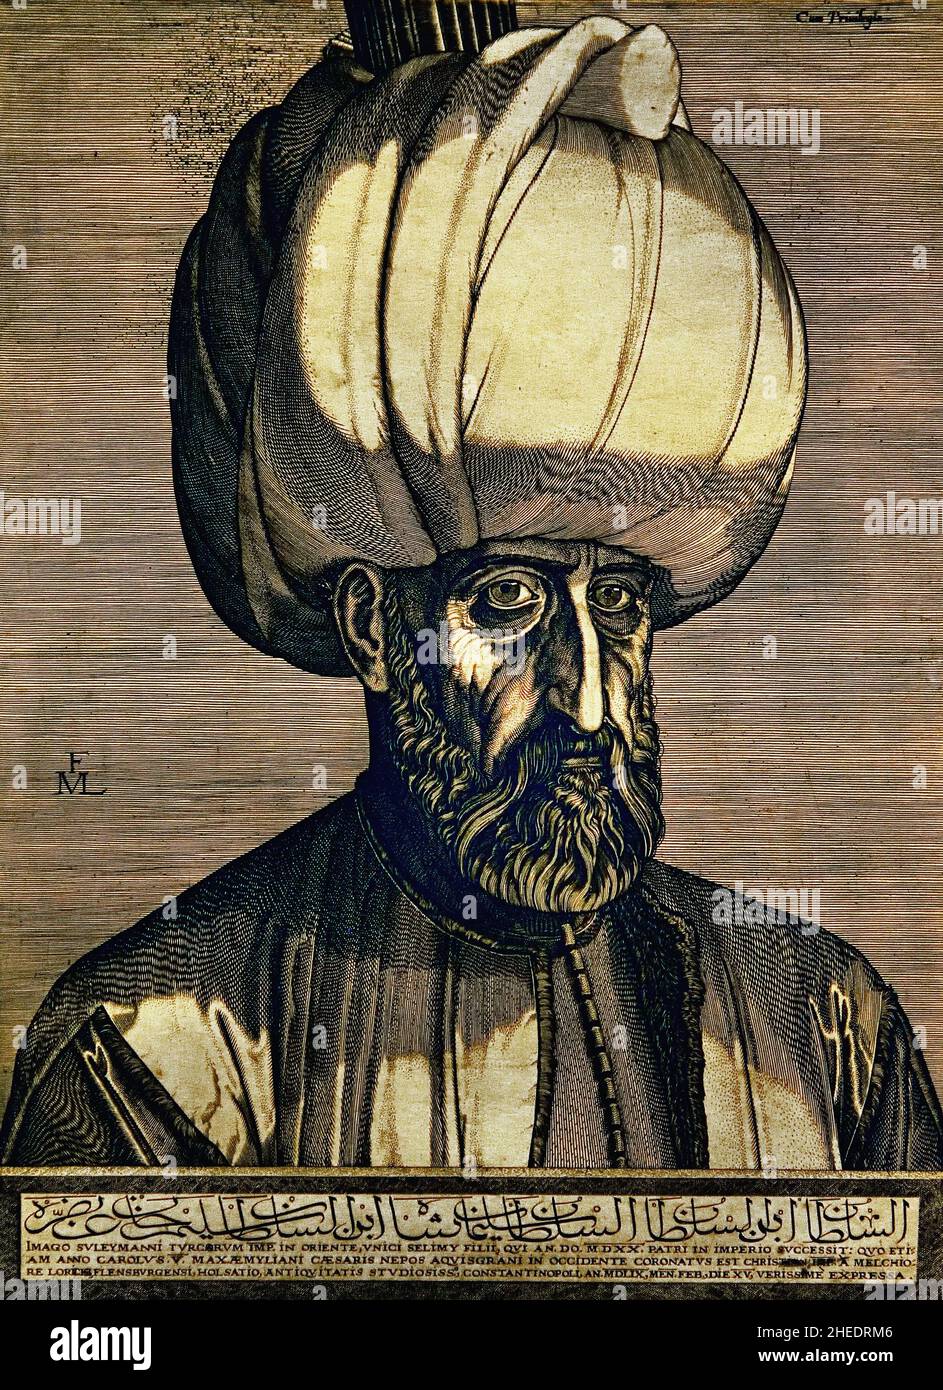 Portrait du Sultan Suleyman le magnifique par Melchior Lorck.Melchior Loichs 1526-1598 (Suleiman I, communément connu sous le nom de Suleiman le magnifique en Occident et Suleiman le donneur dans son Royaume, était le dixième et le plus long sultan régnant de l'Empire ottoman de 1520 jusqu'à sa mort en 1566.) Banque D'Images